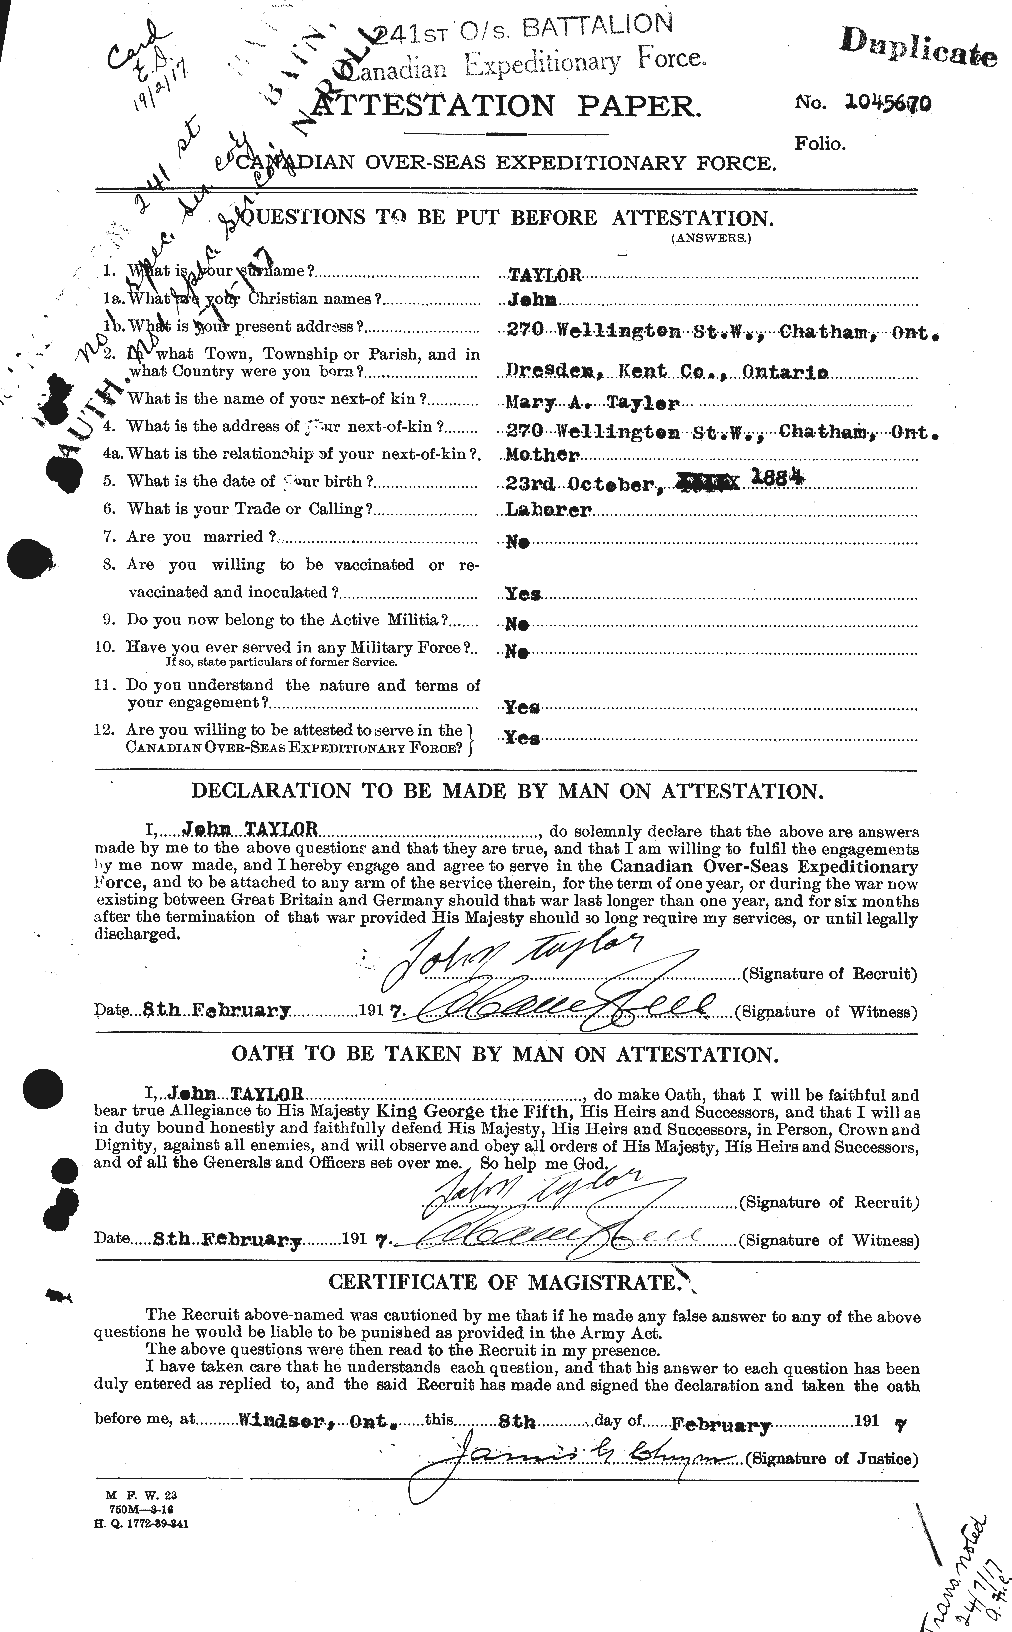 Dossiers du Personnel de la Première Guerre mondiale - CEC 626974a